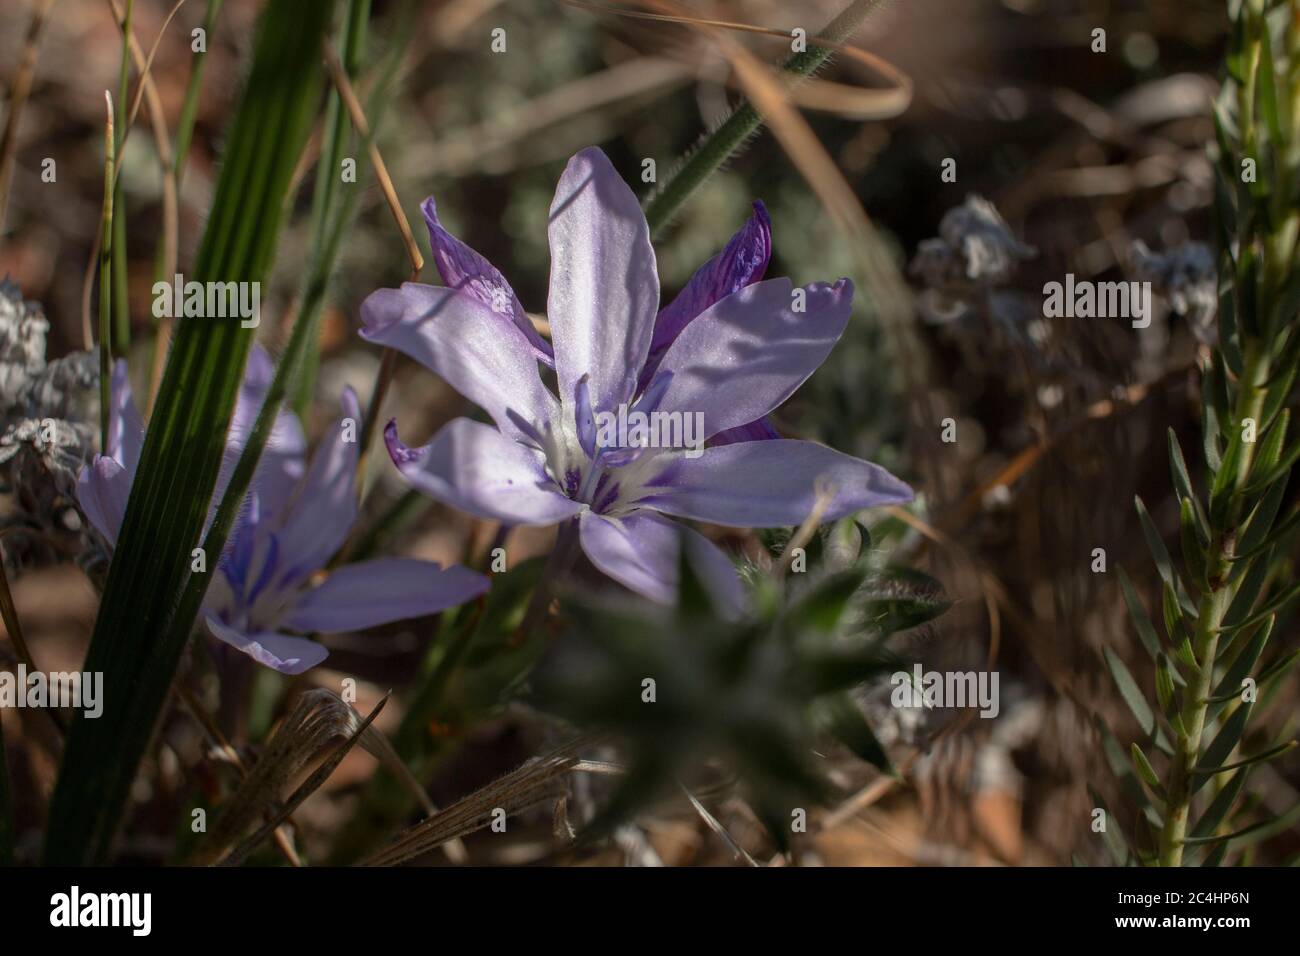 Babiana species plant with purple flower Stock Photo